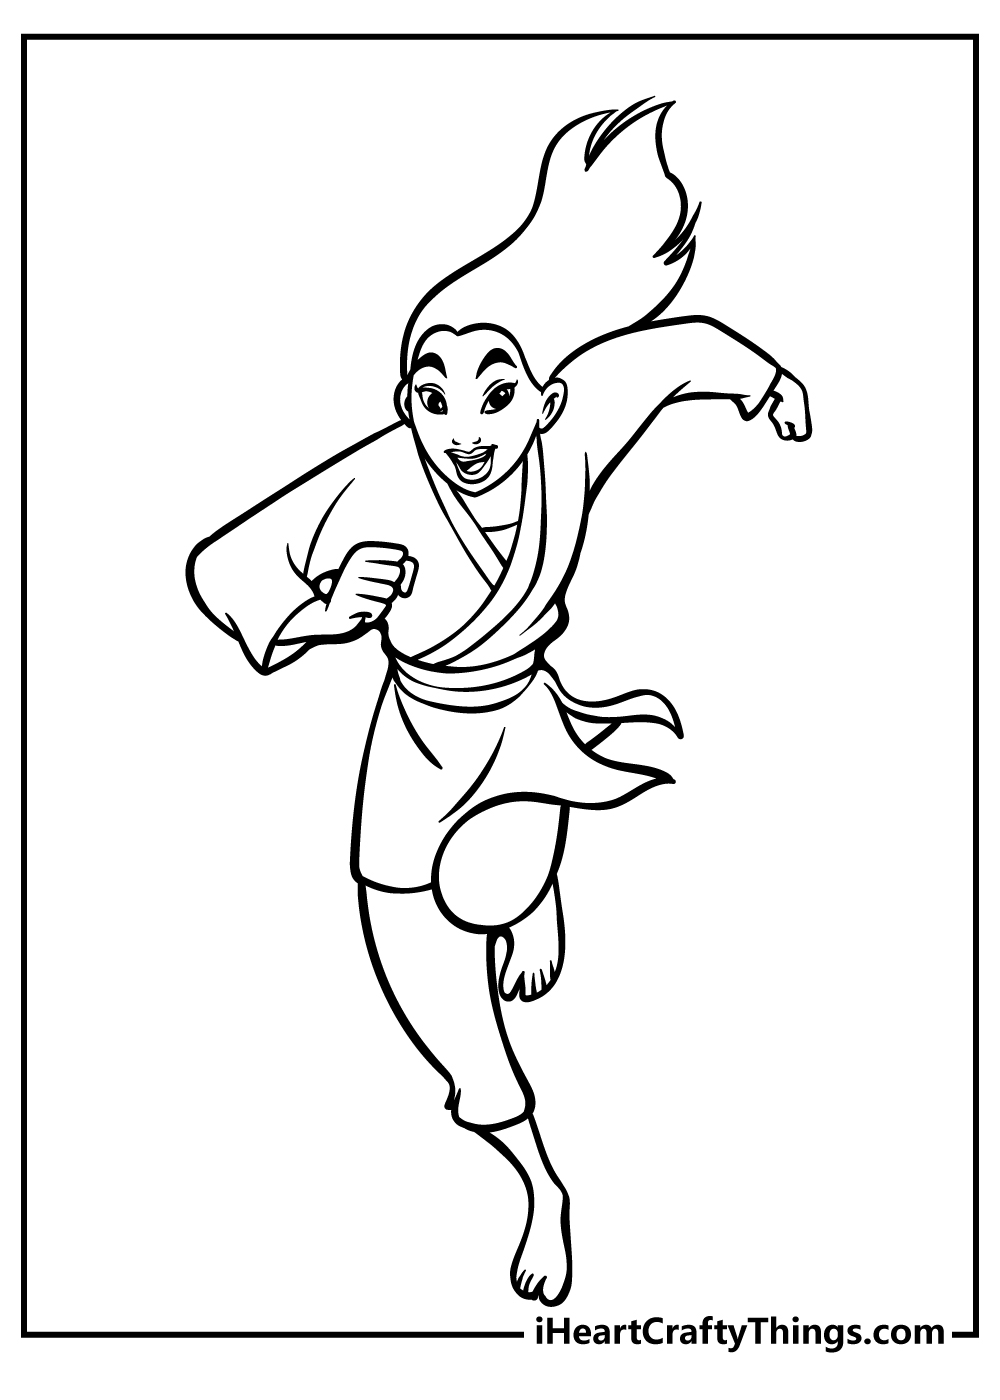 Mulan Coloring Sheet for children free download